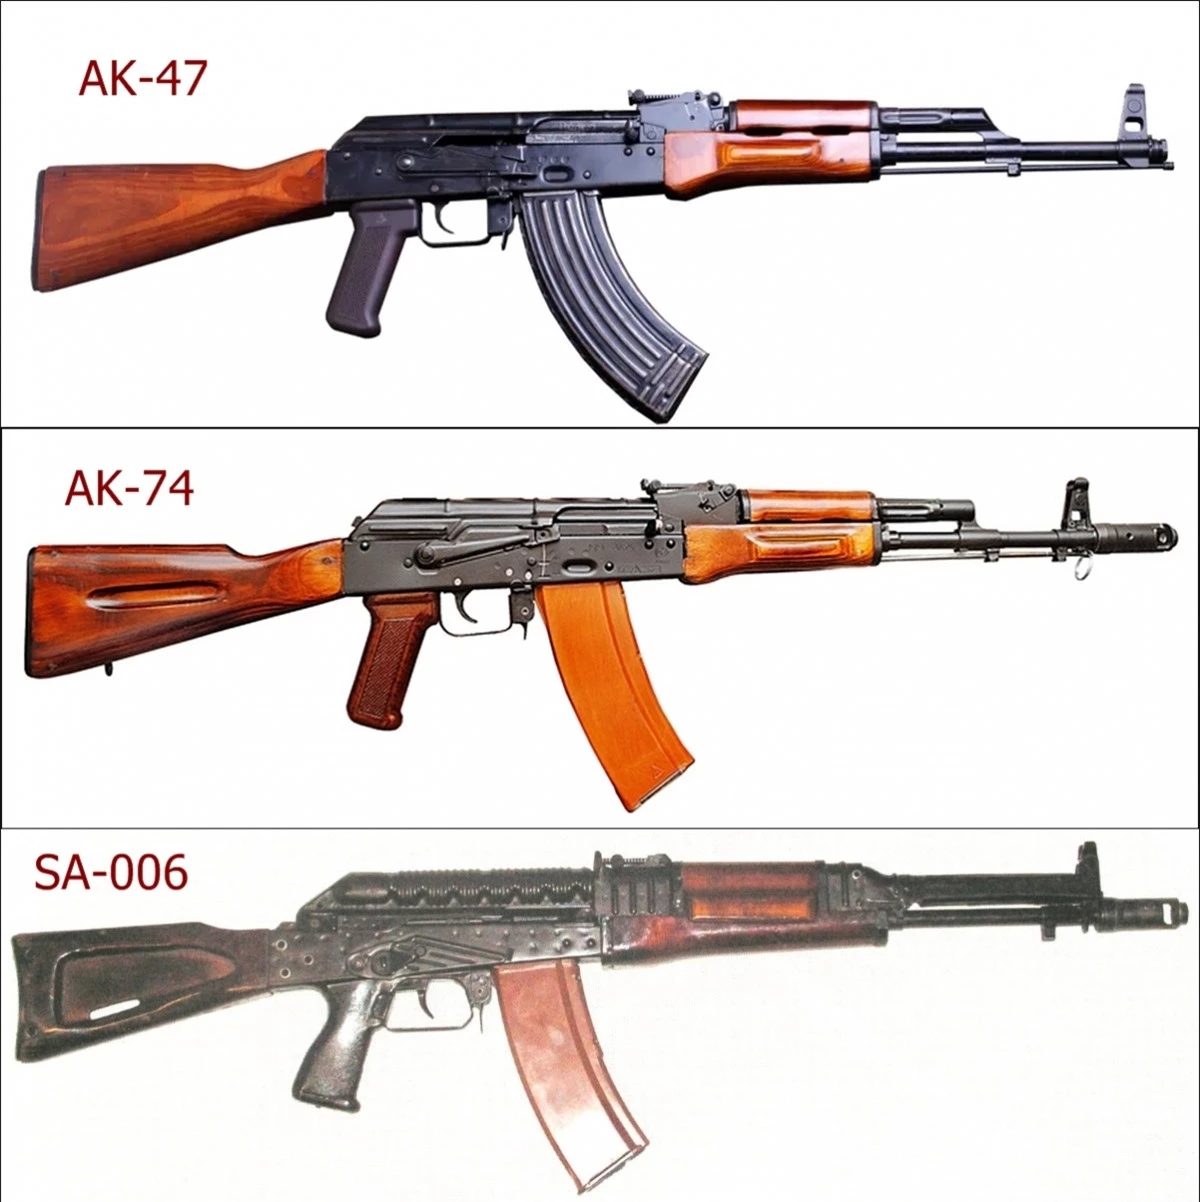 Các loại súng AK-47, AK-74, SA-006. Ảnh: Wikipedia, Modernfirearms, RBTH.